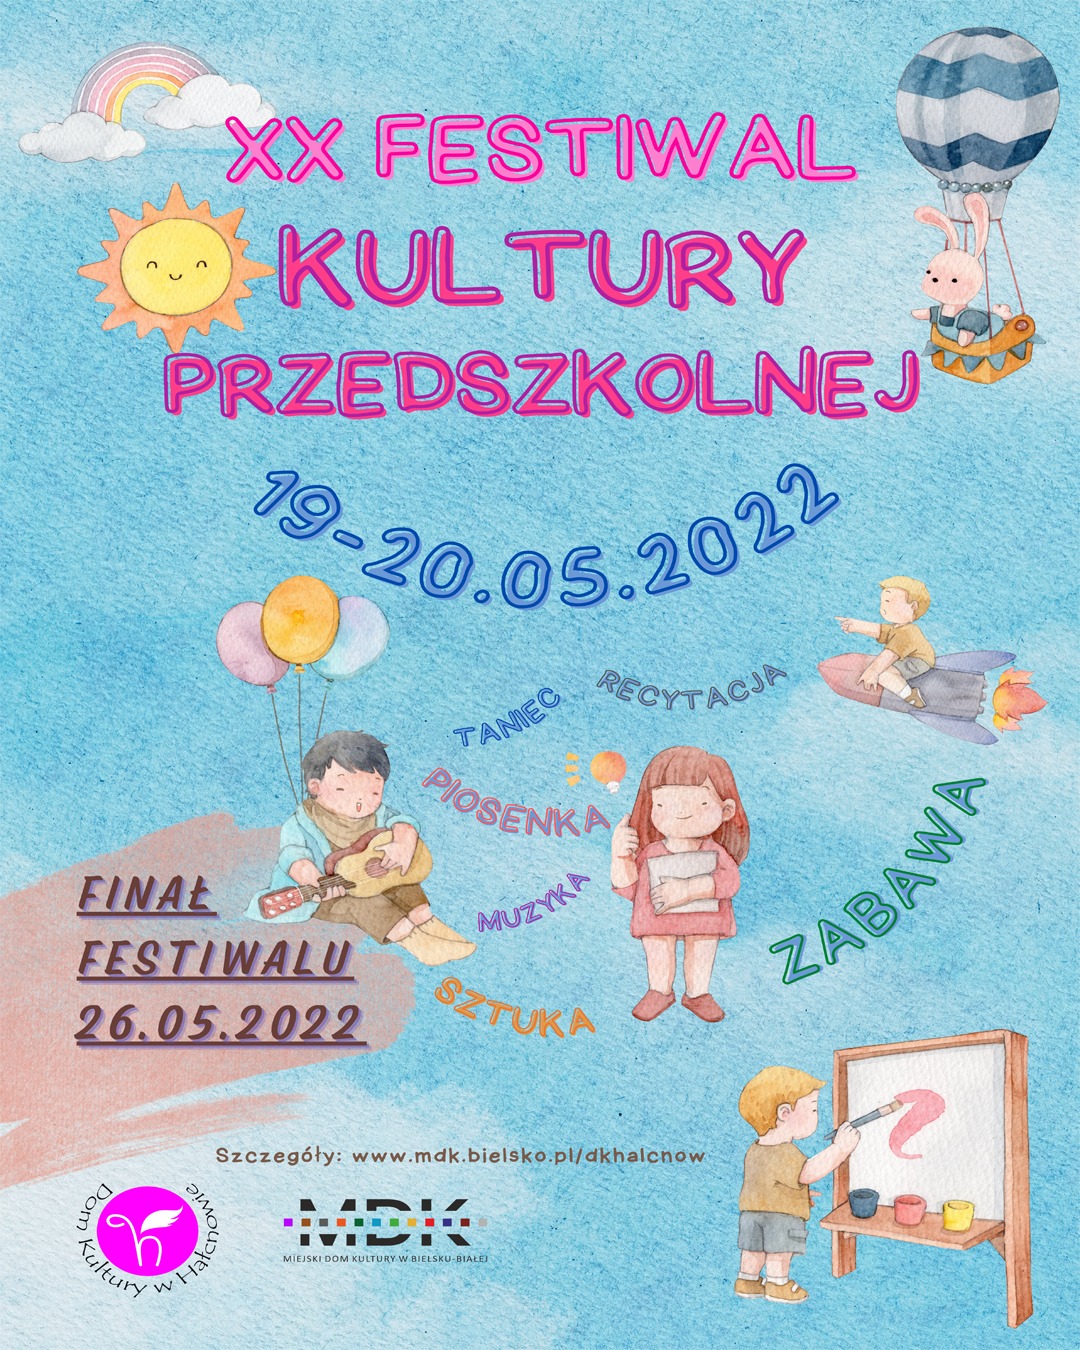  20. Festiwal Kultury Przedszkolnej Na zdjęciu plakat imprezy